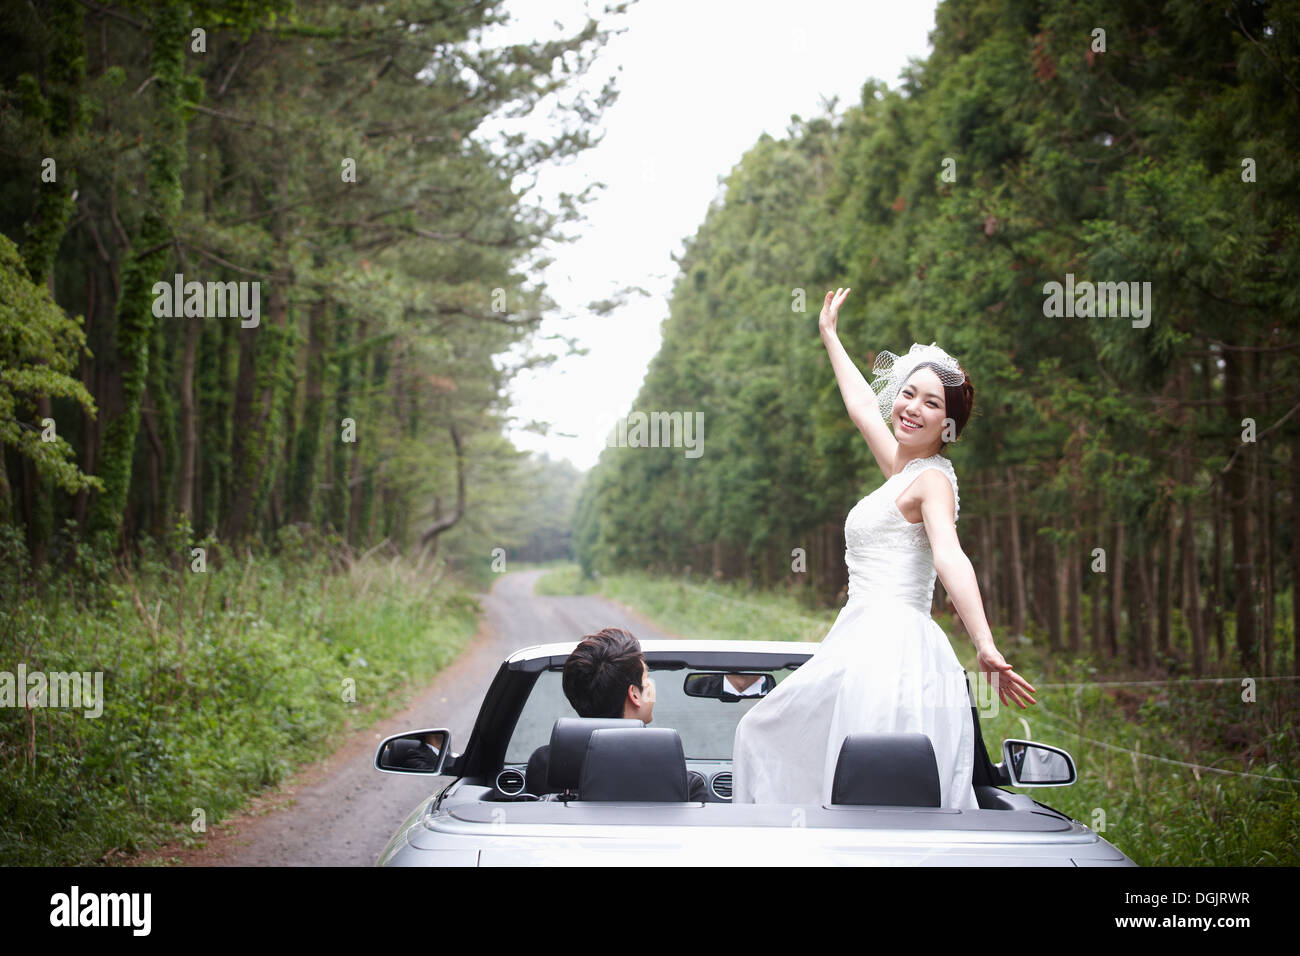 Les nouveaux mariés au volant d'une voiture décapotable Banque D'Images